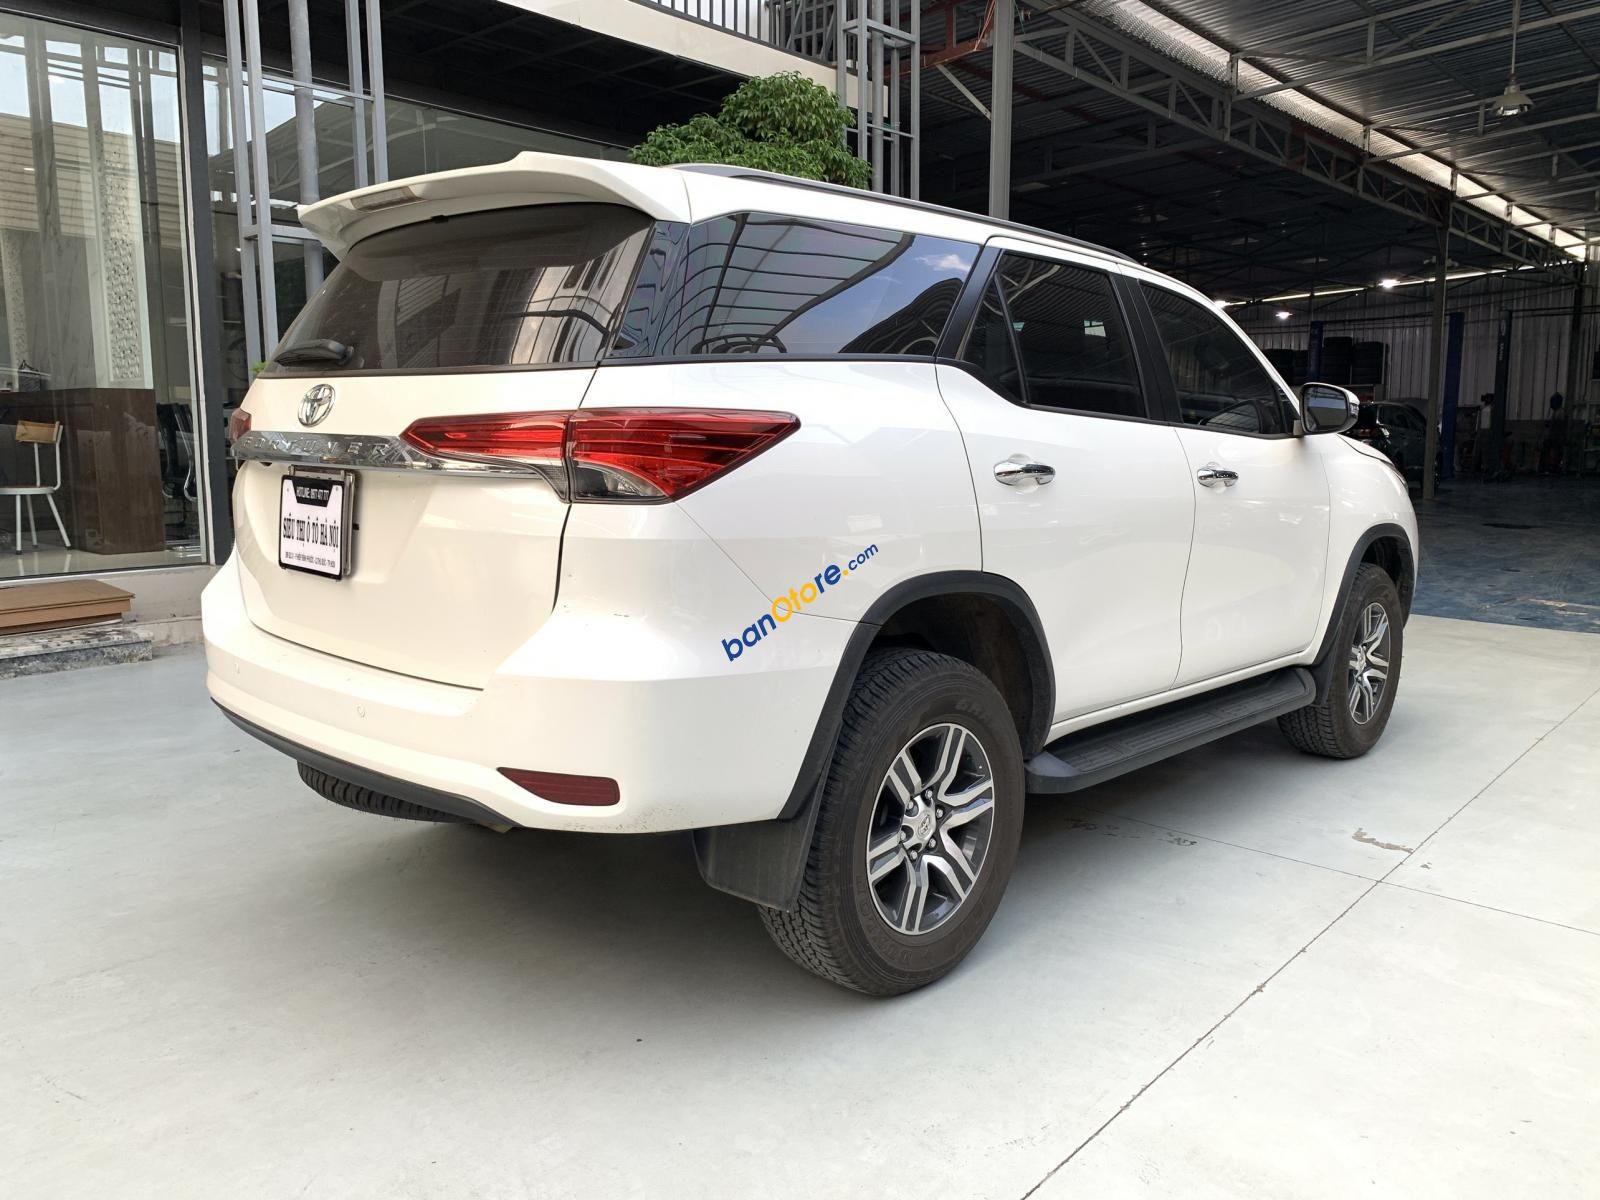 Bán xe ô tô Toyota Fortuner sản xuất năm 2019, màu trắng, xe siêu lướt 23.000km, có trả góp